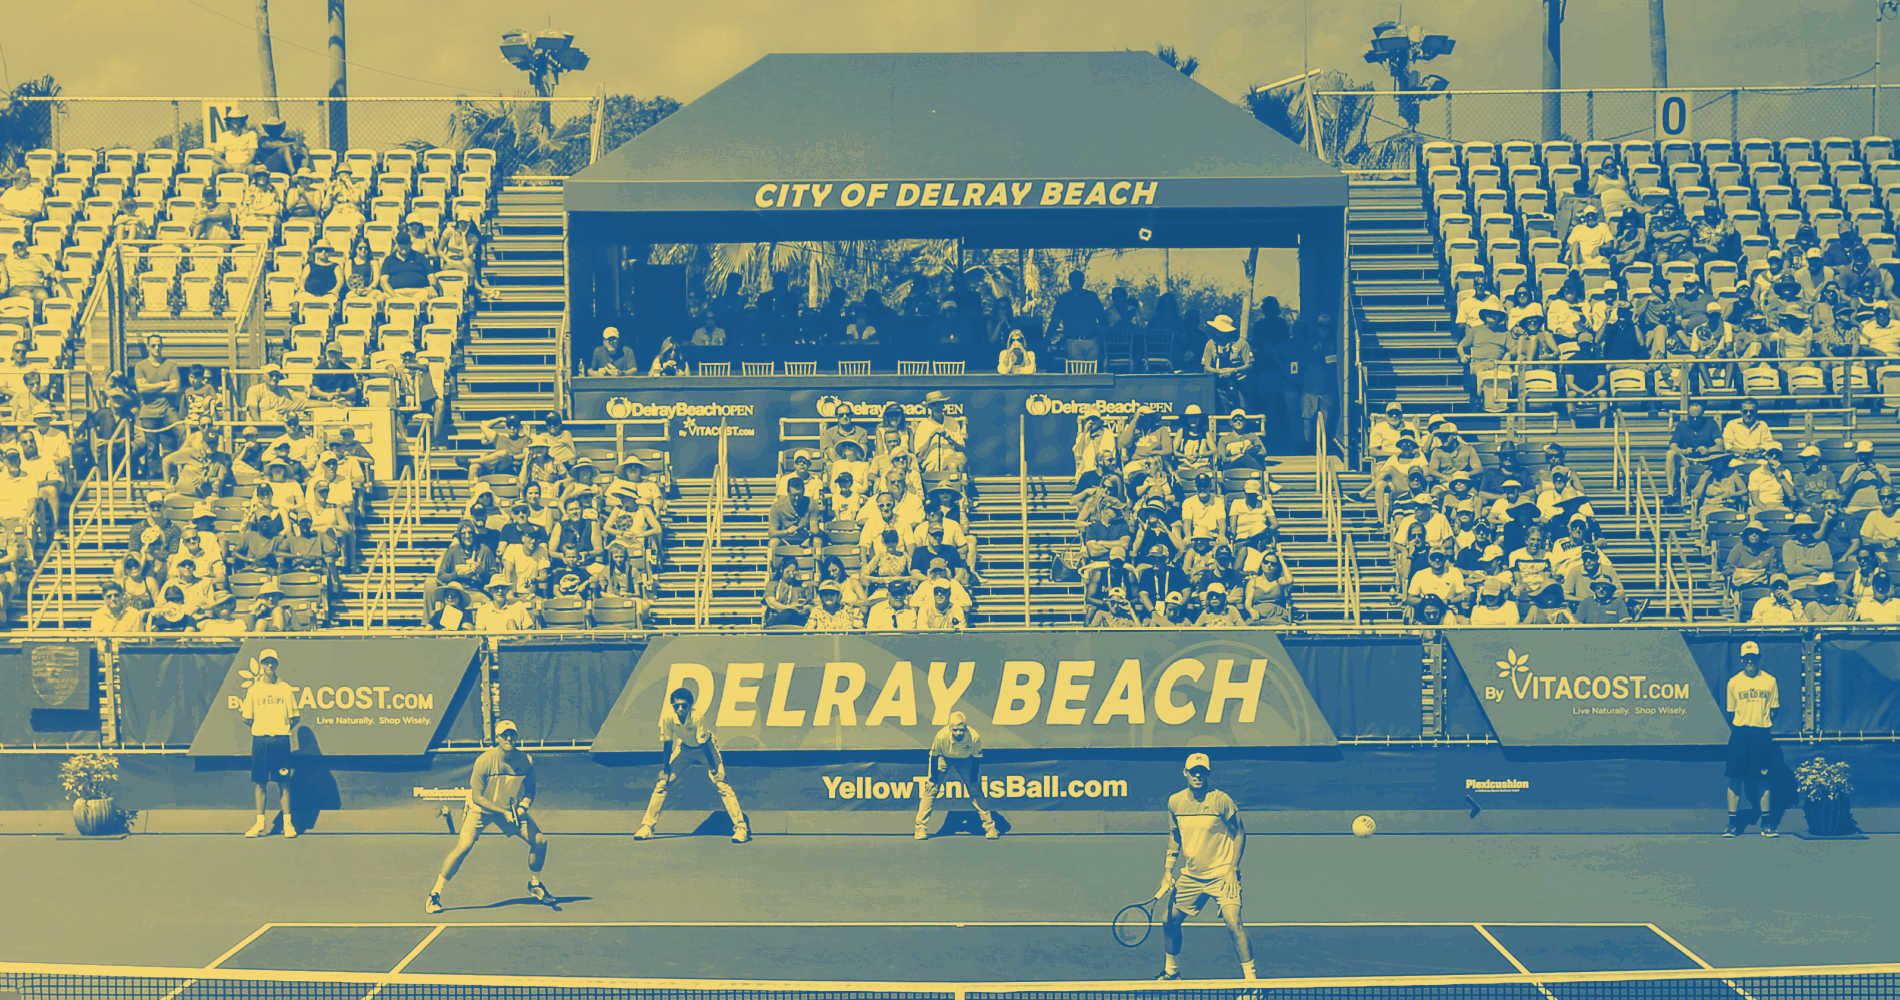 Tennis in 2021: Delray Beach Open